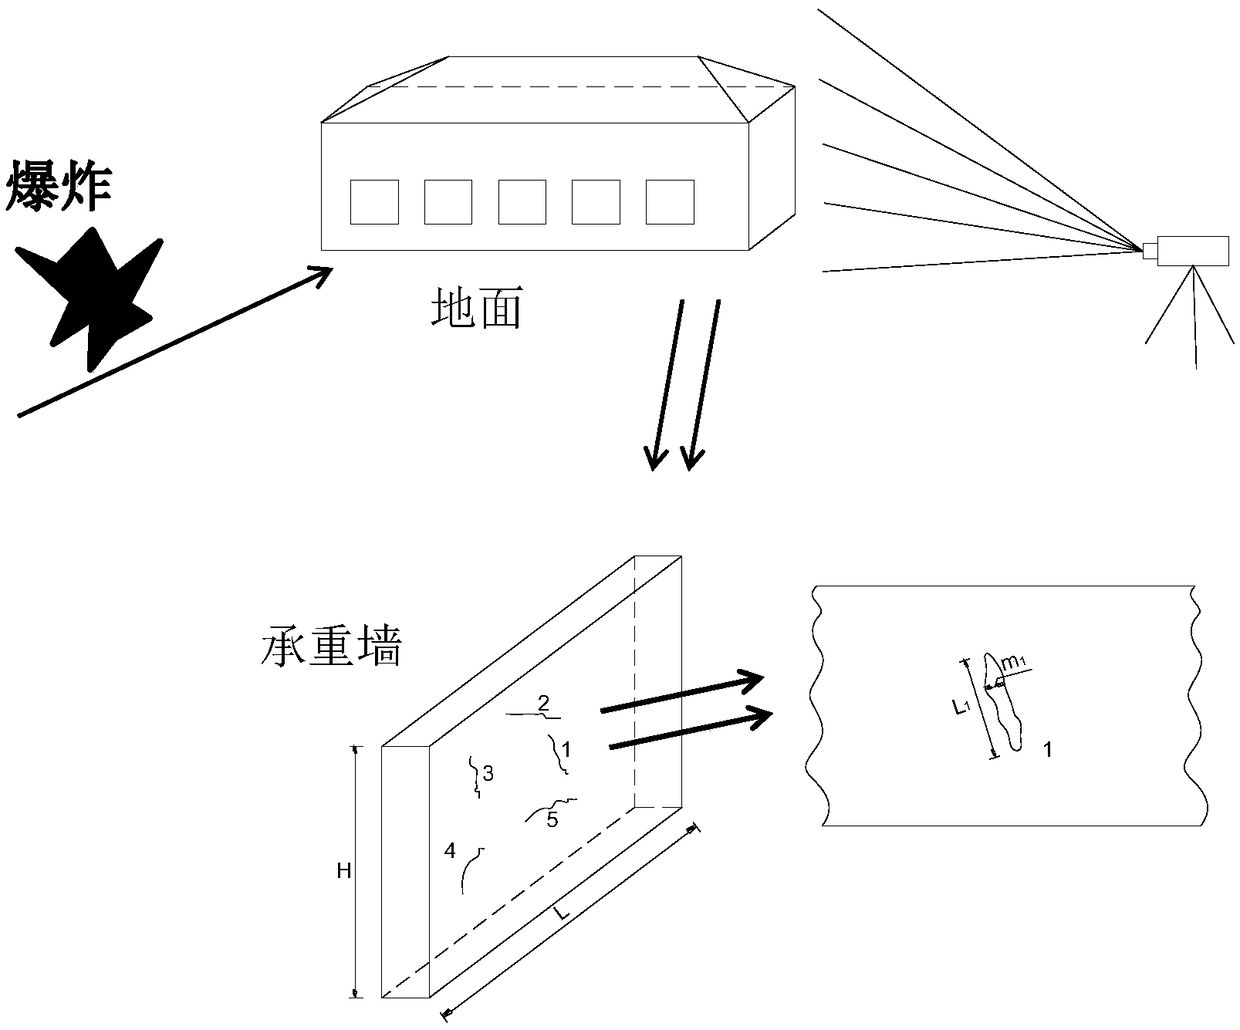 Method for evaluating blast vibration damage of building based on 3D laser scanning